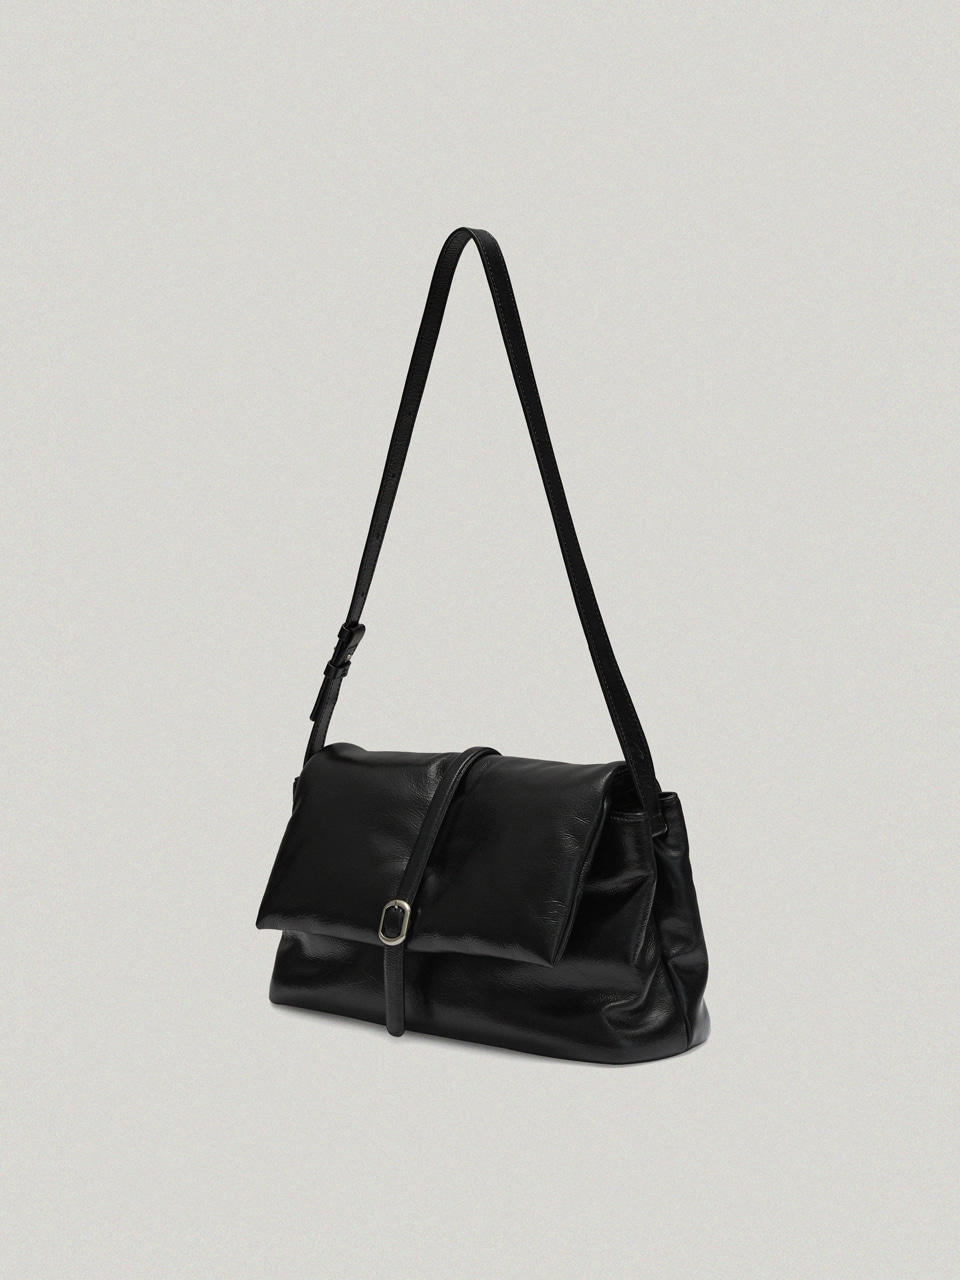 Journal Puffer Bag / Soft Black